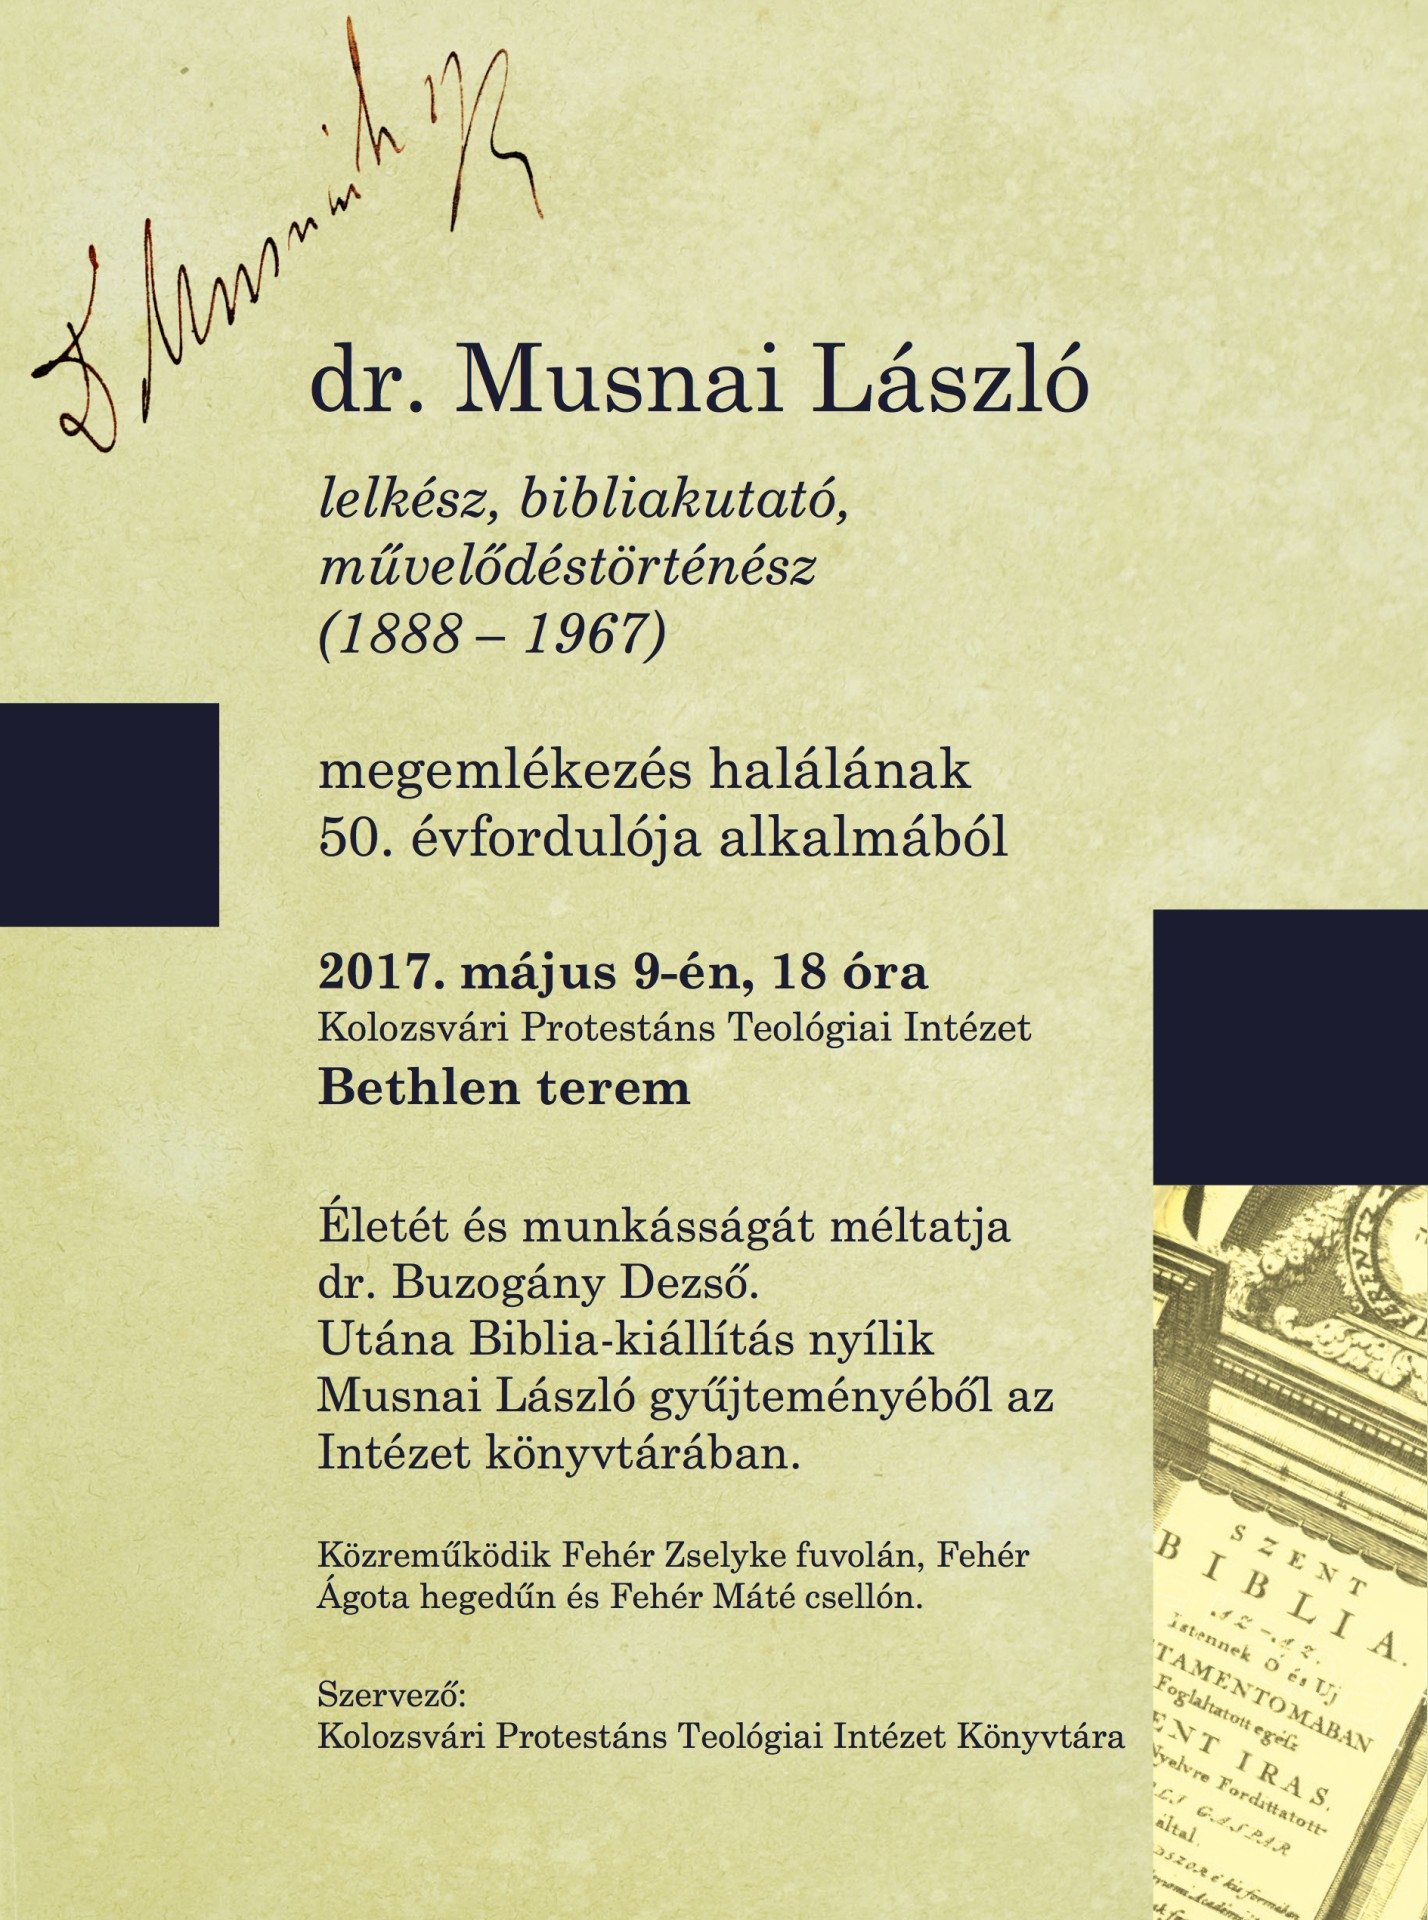 dr. Musnai László bibliakutatóra emlékeznek